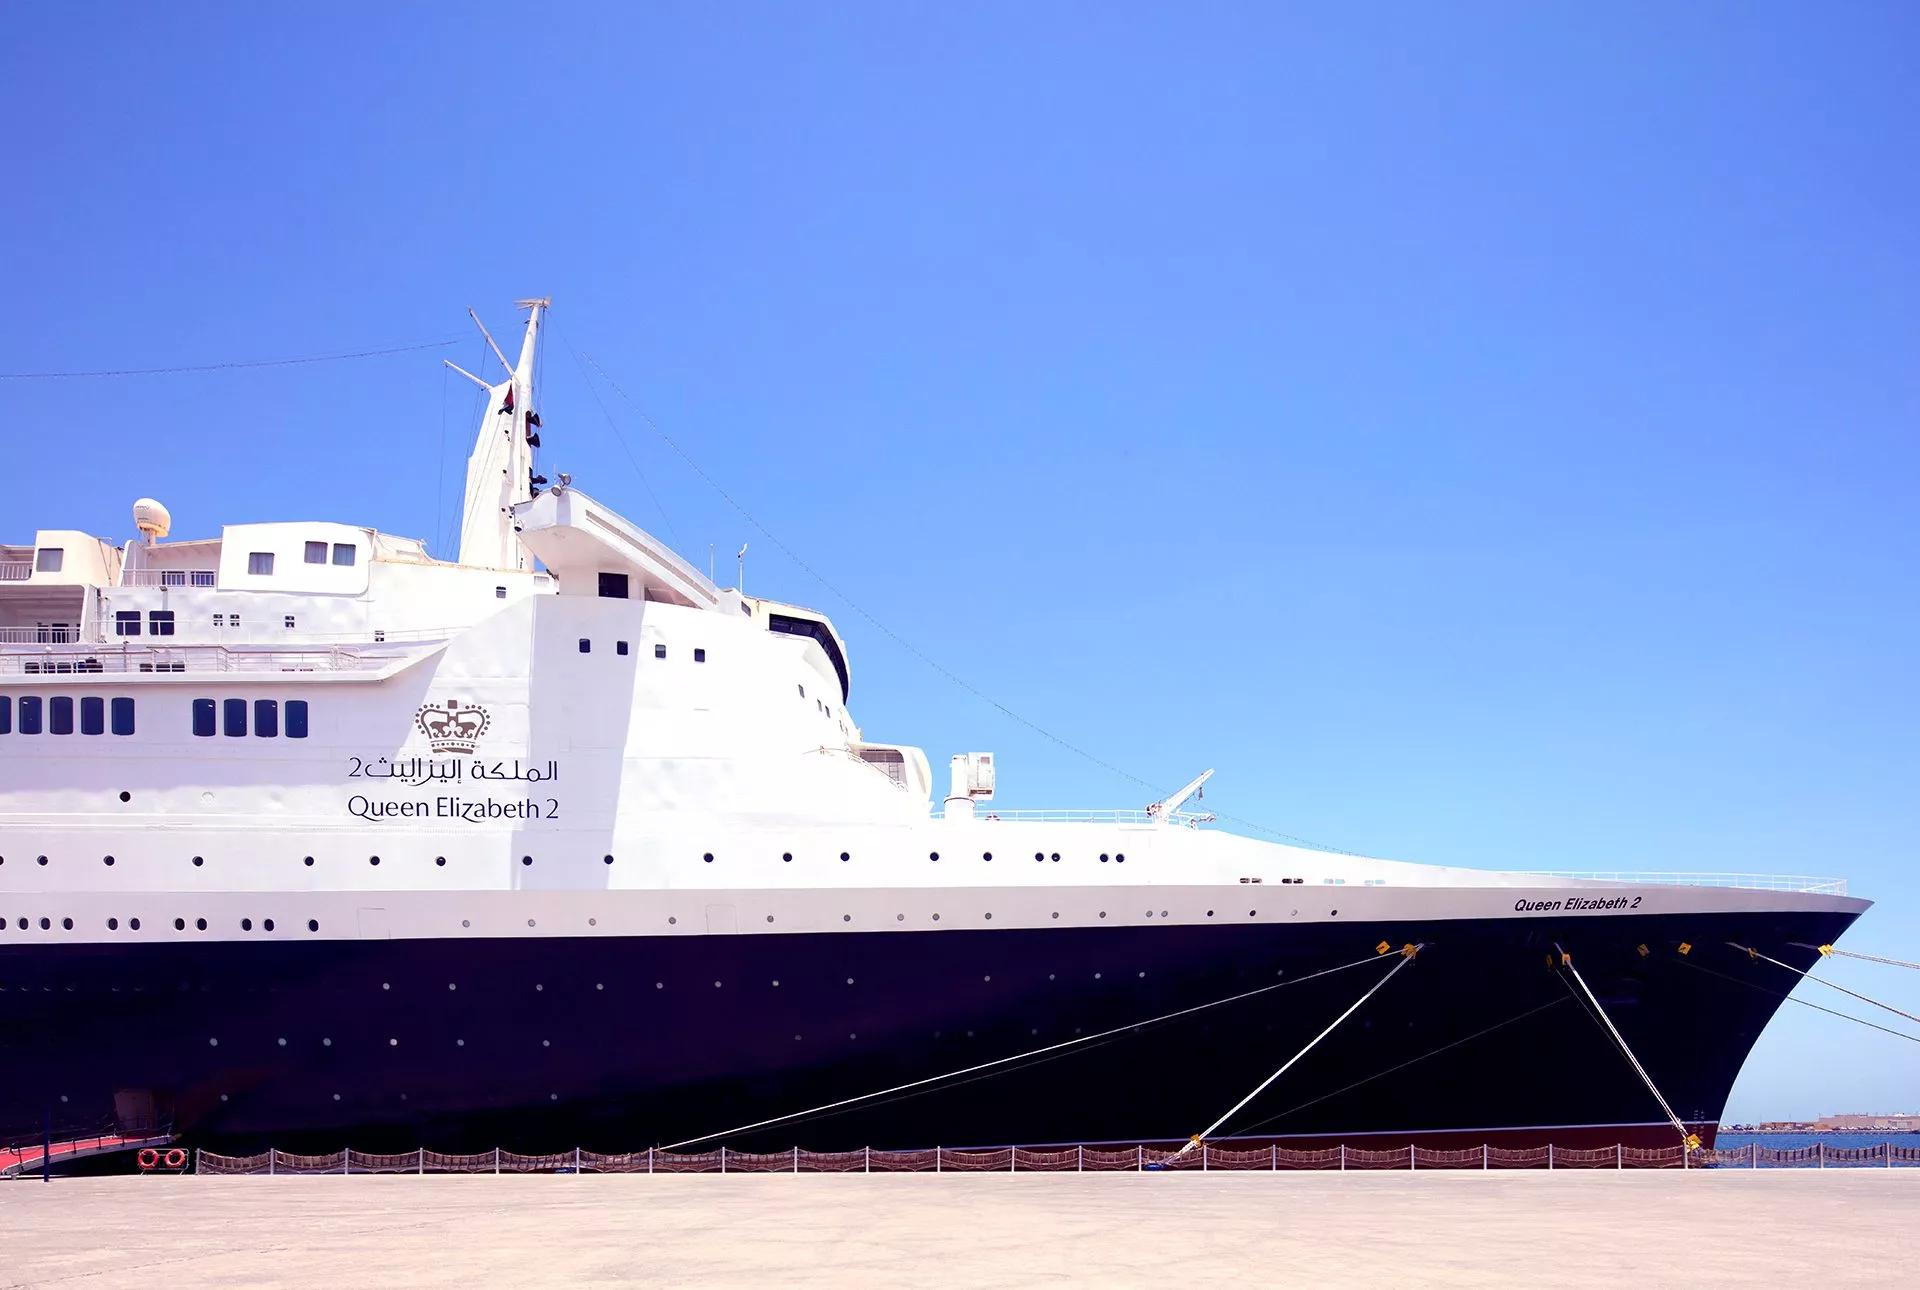 The Queen Elizabeth II ocean liner